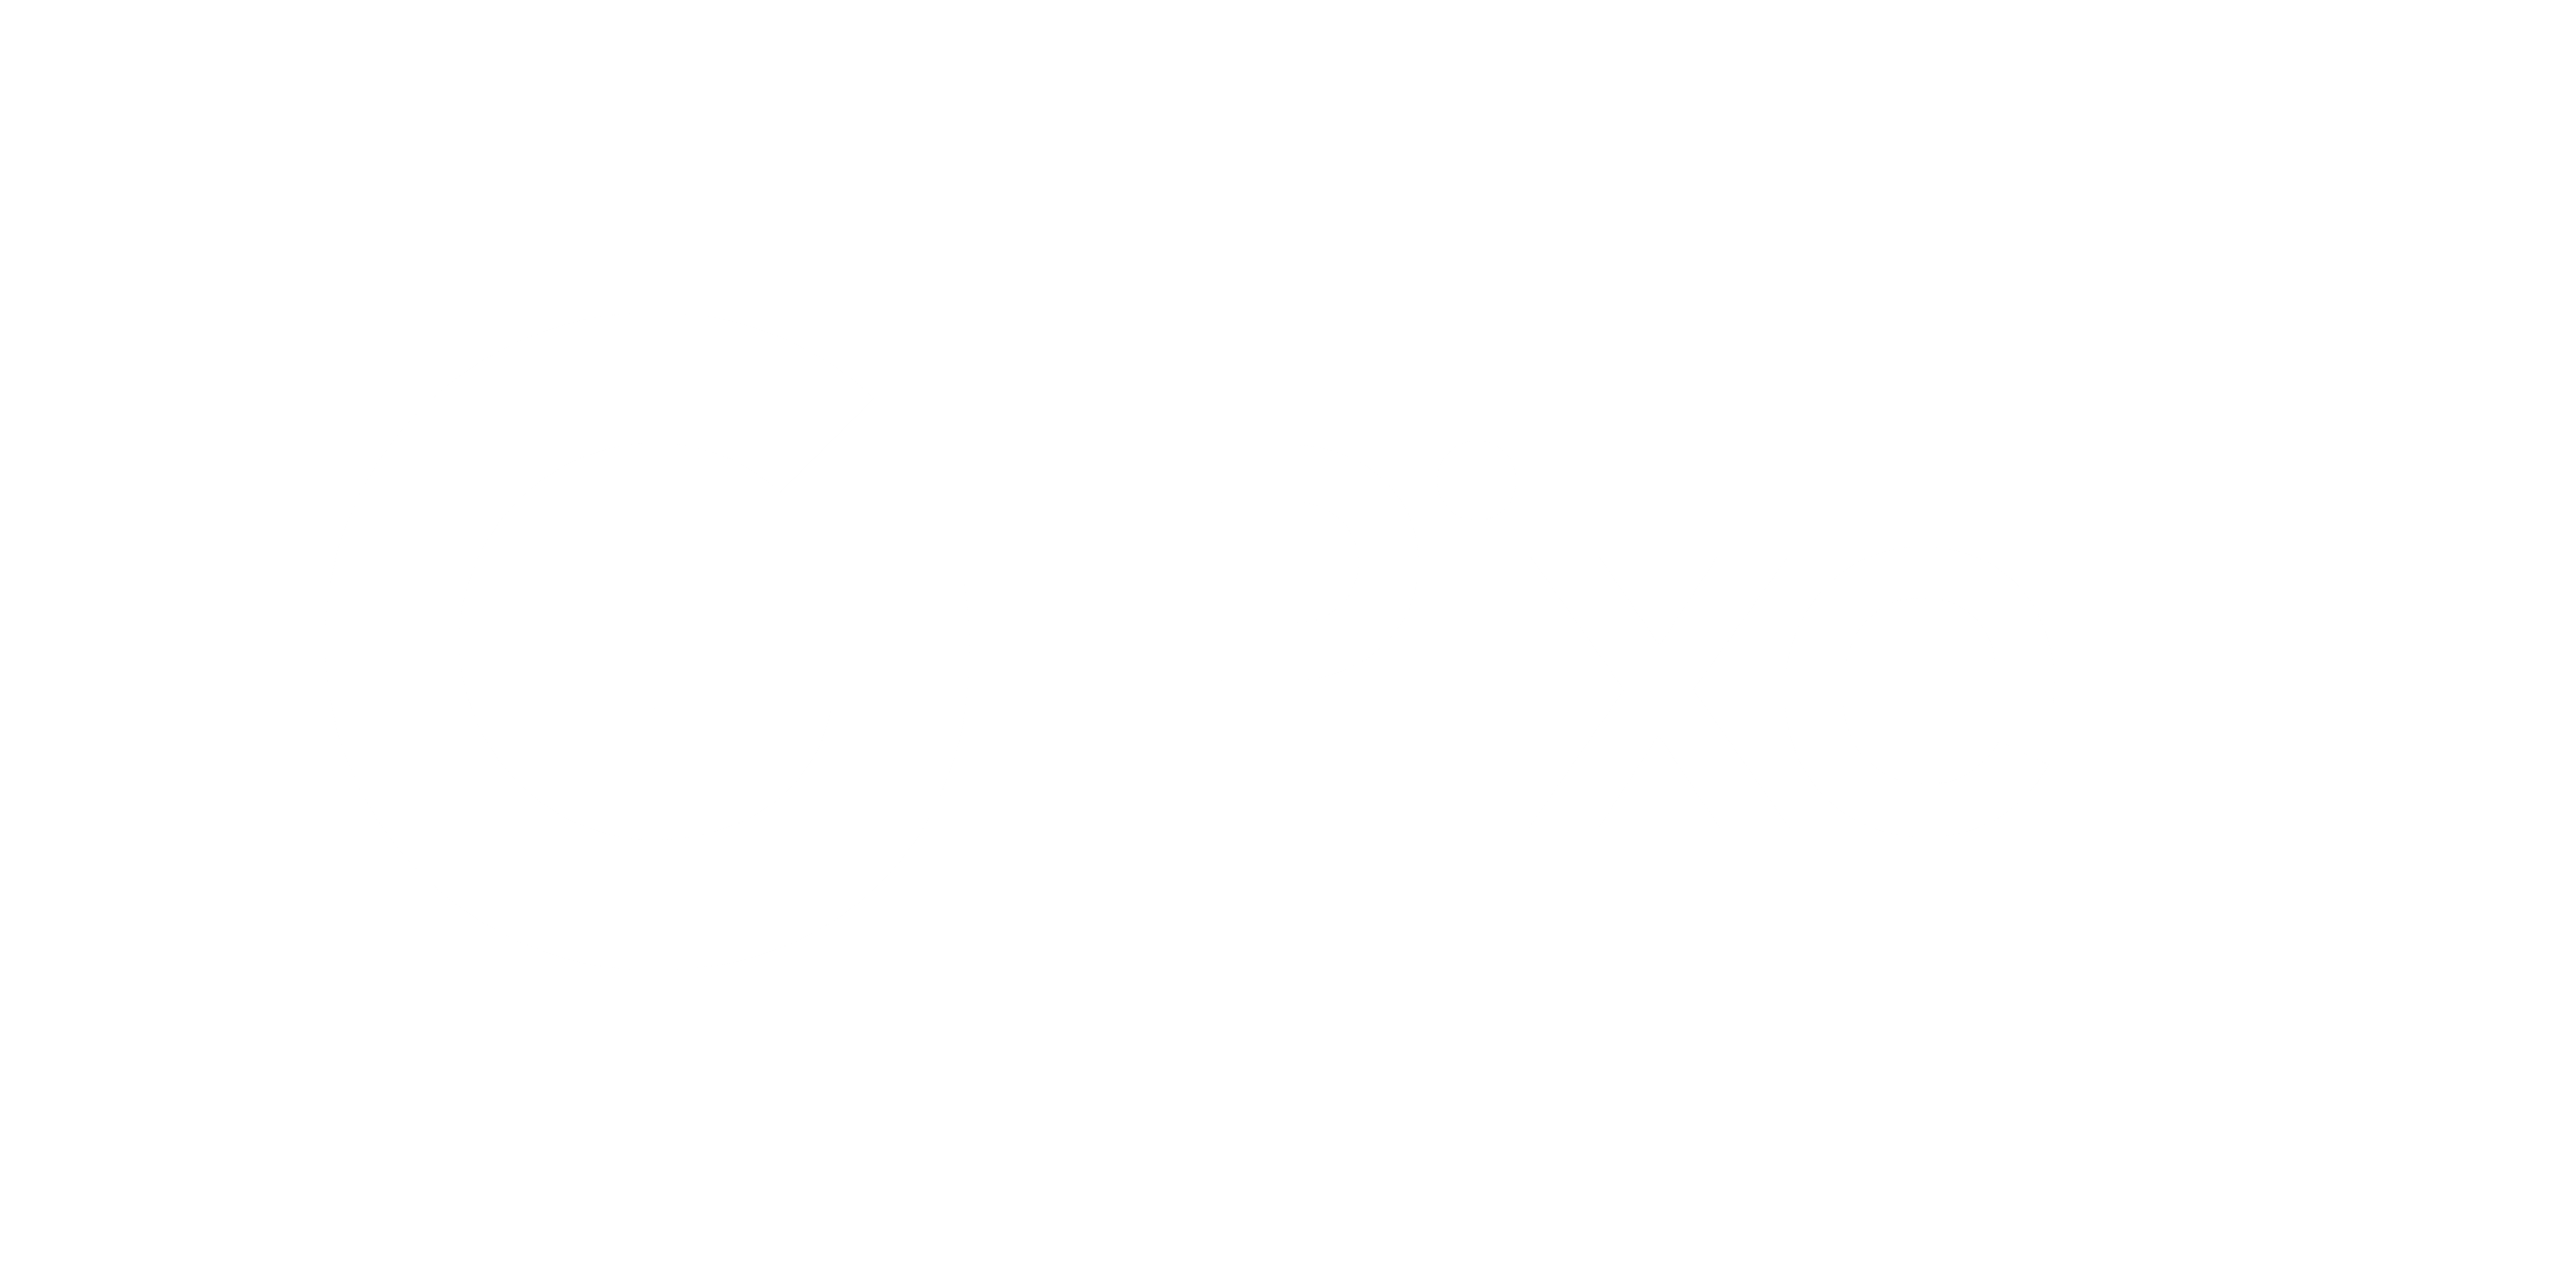 Google pixel logo